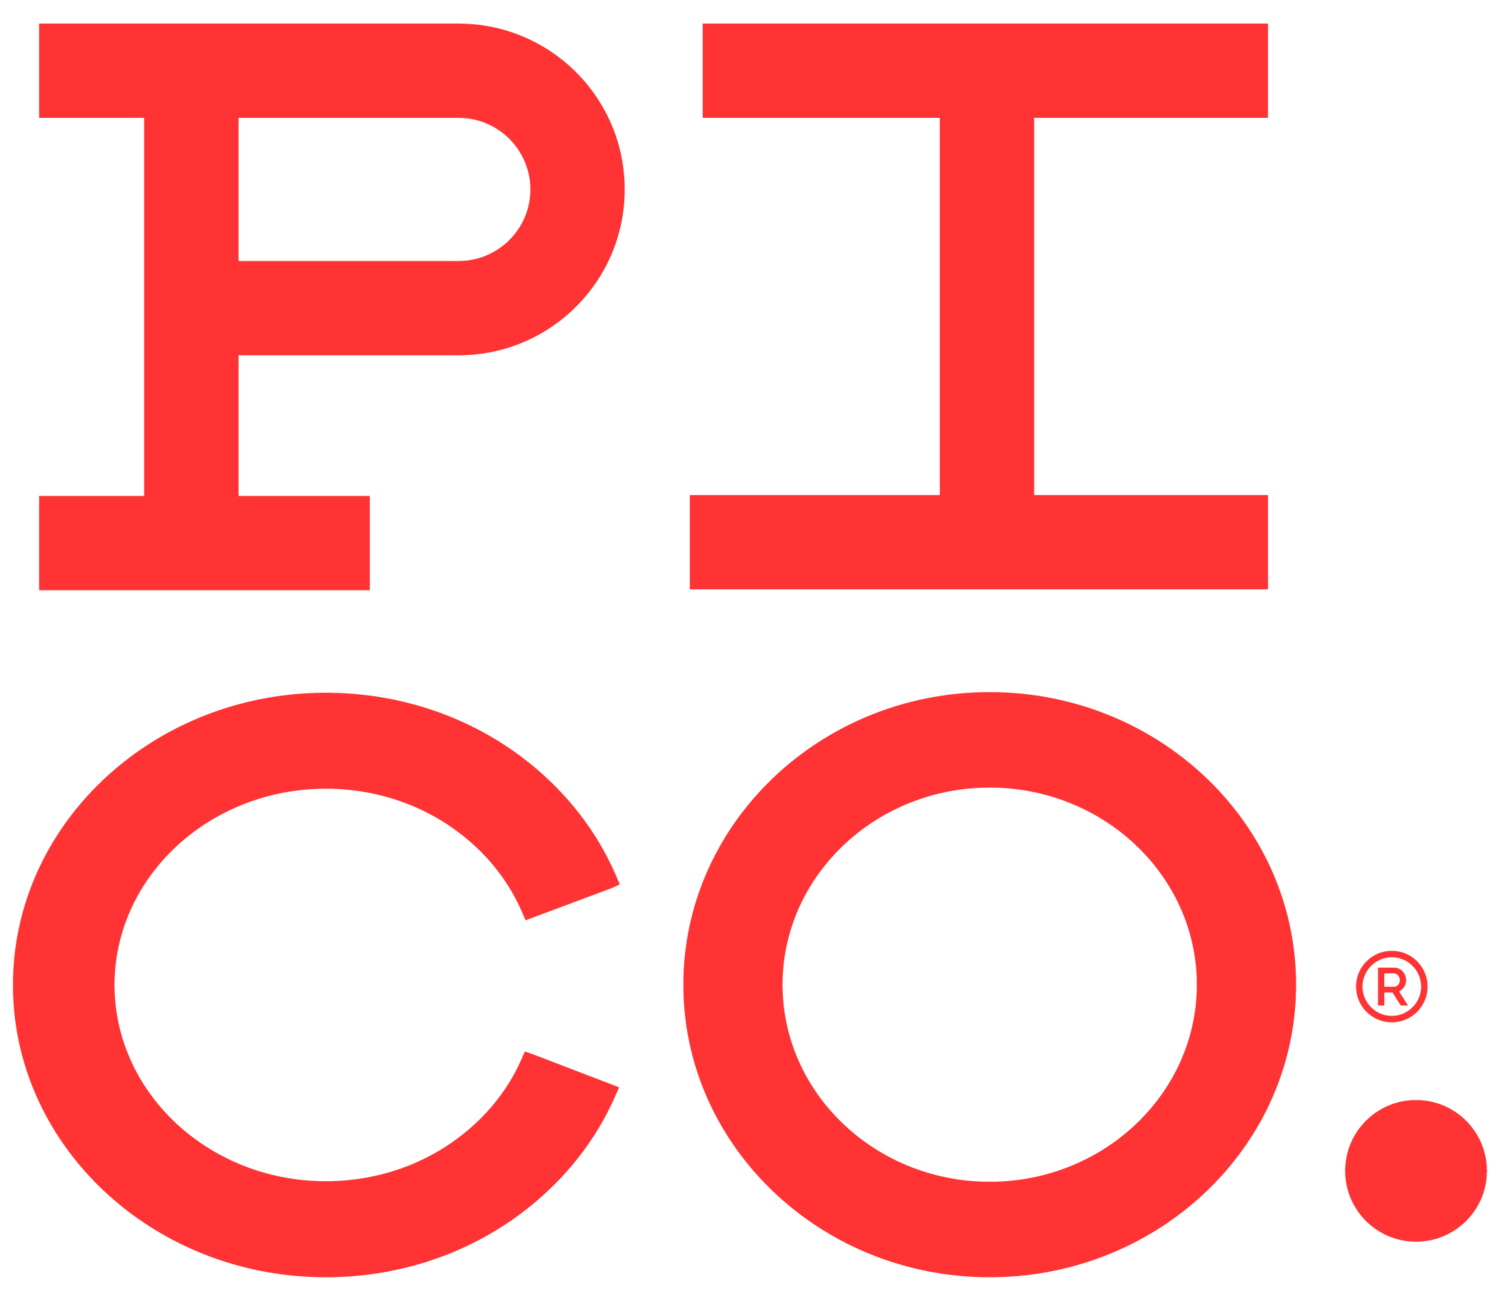 Pi Co. logo